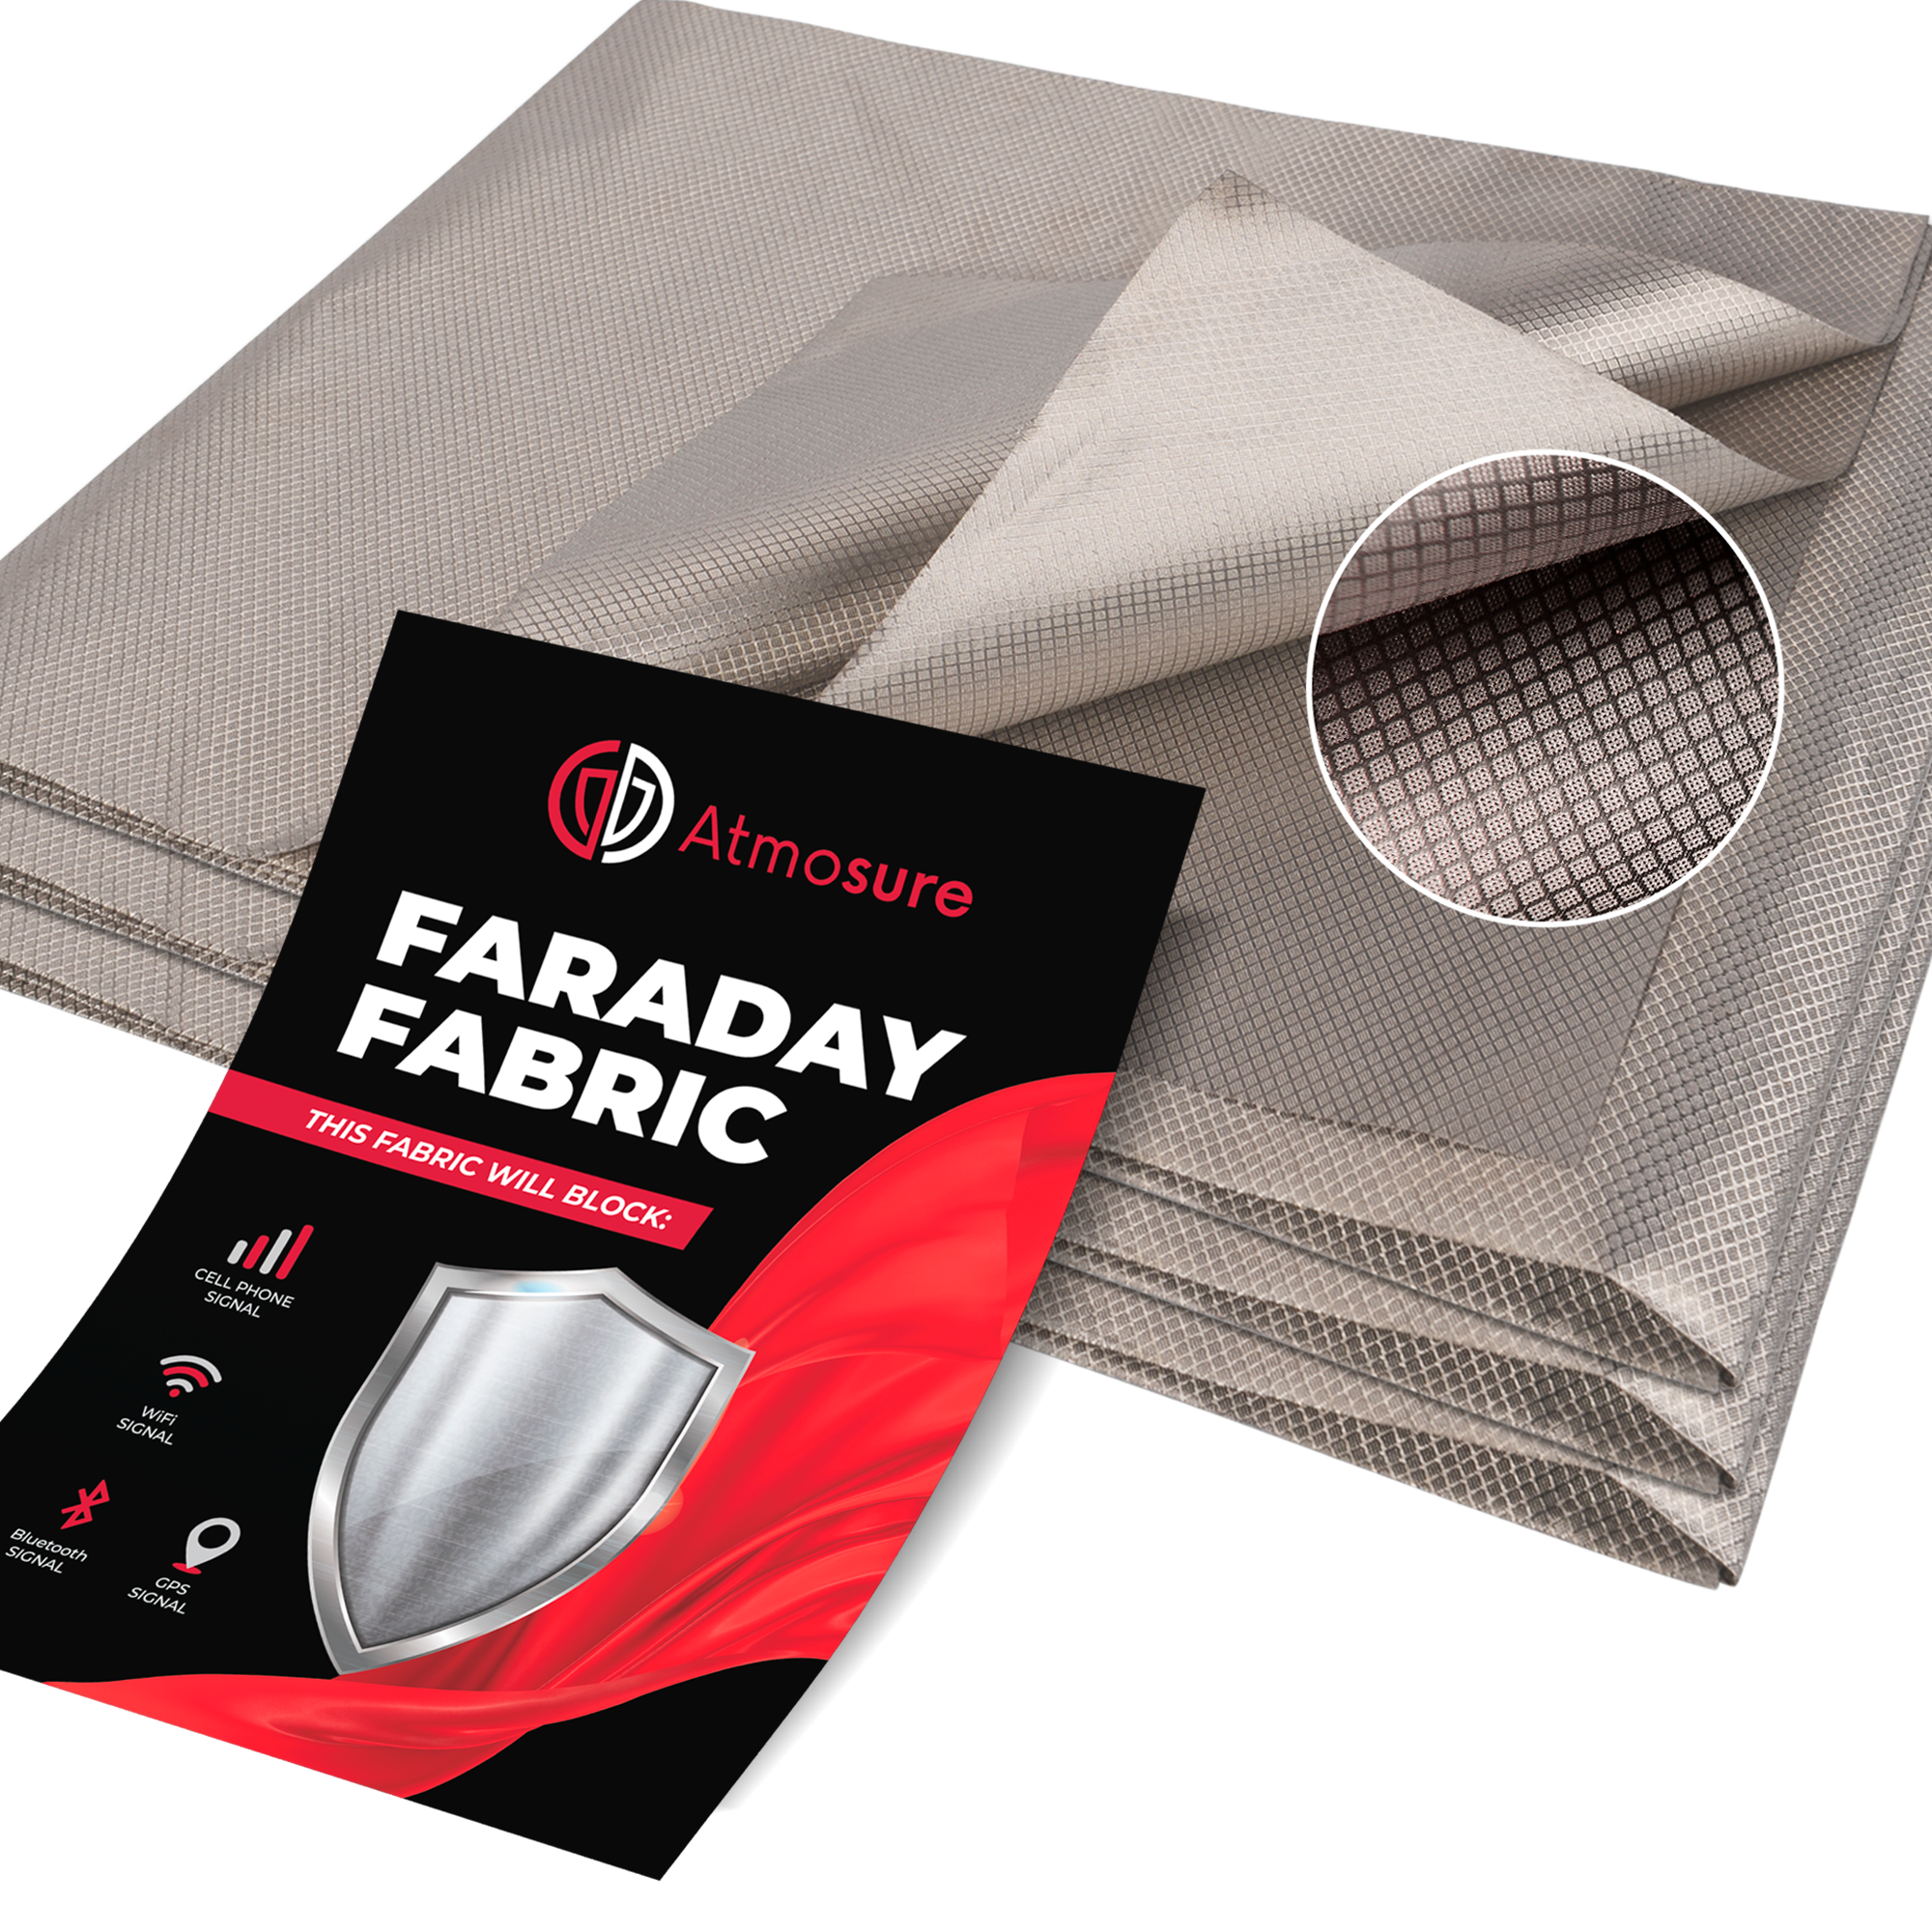 Faraday Fabric (44" x 36") — RF, EMI, & RFID Shielding for 99% EMF Protection